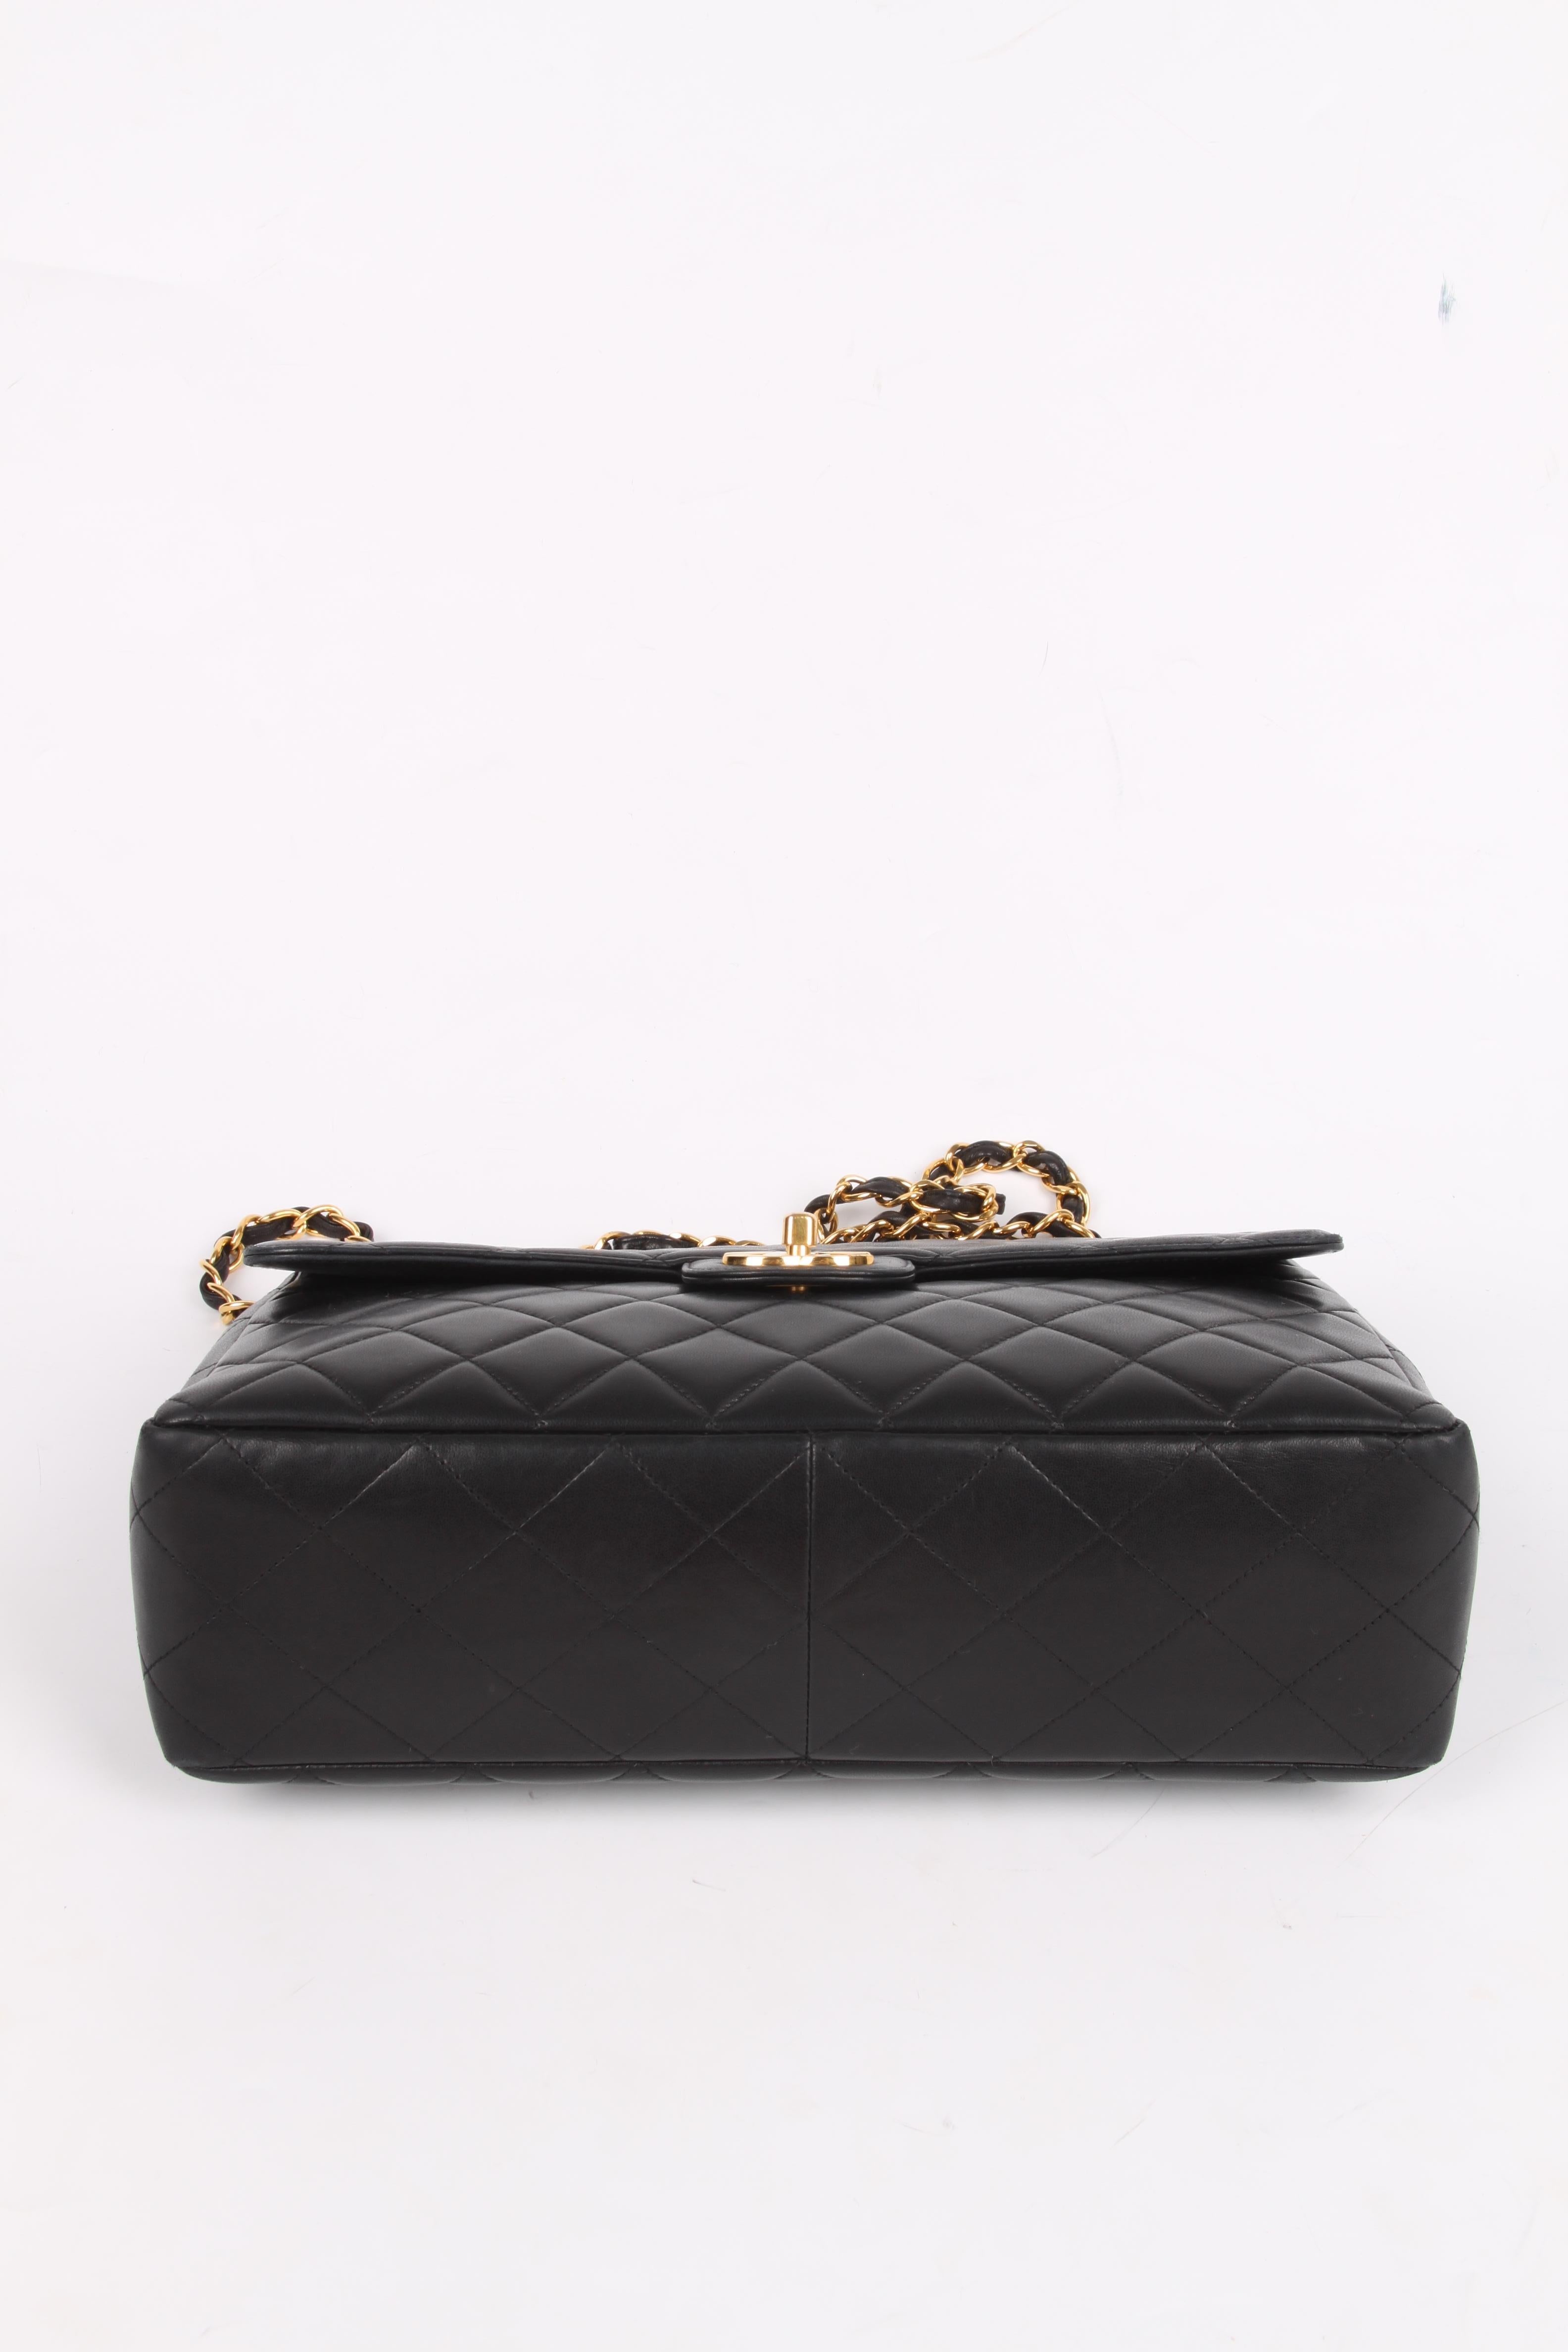 Women's or Men's Chanel Vintage Timeless Jumbo Single Flap Bag - black/gold